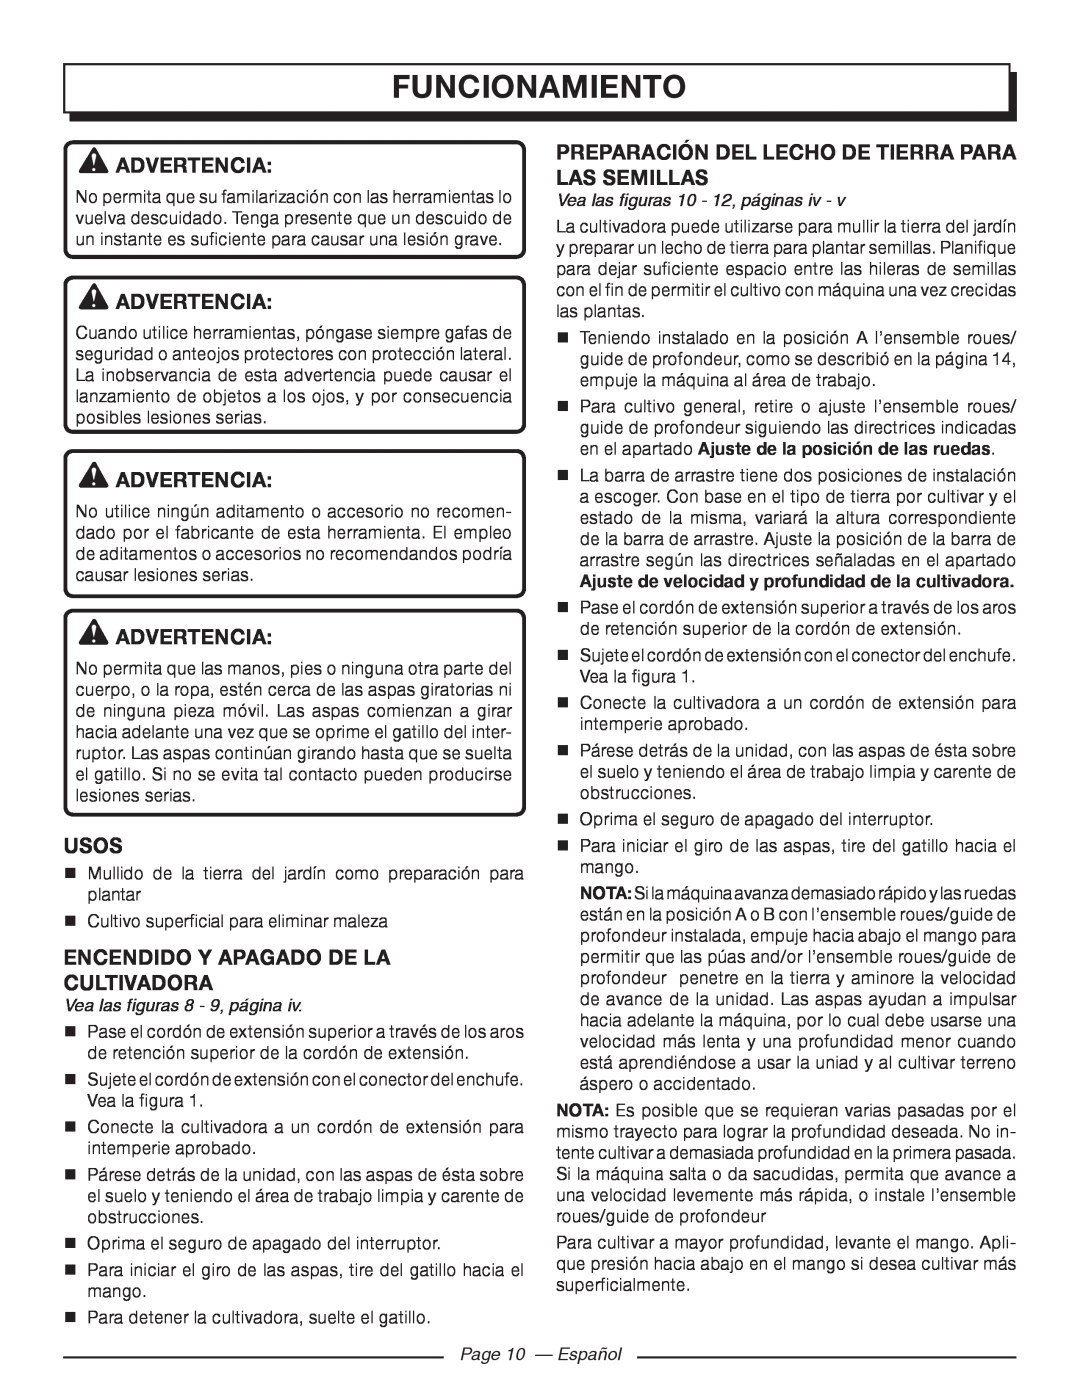 Homelite UT46510 Funcionamiento, Advertencia, Preparación Del Lecho De Tierra Para Las Semillas, Usos, Page 10 - Español 